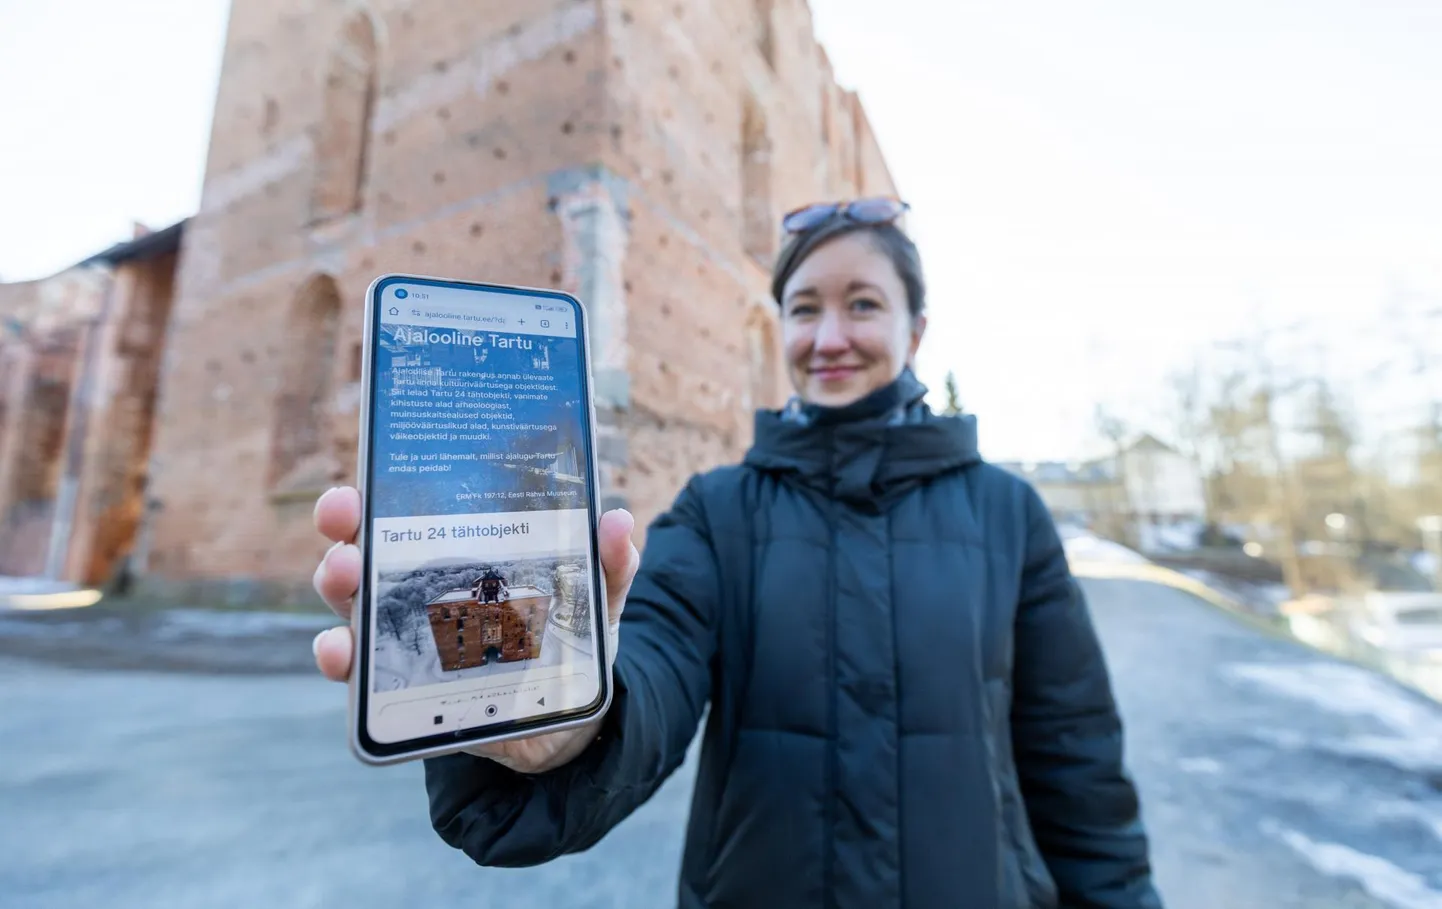 Brita Arnover tutvustab toomkiriku varemete juures oma telefonis avatud kaardirakendust.